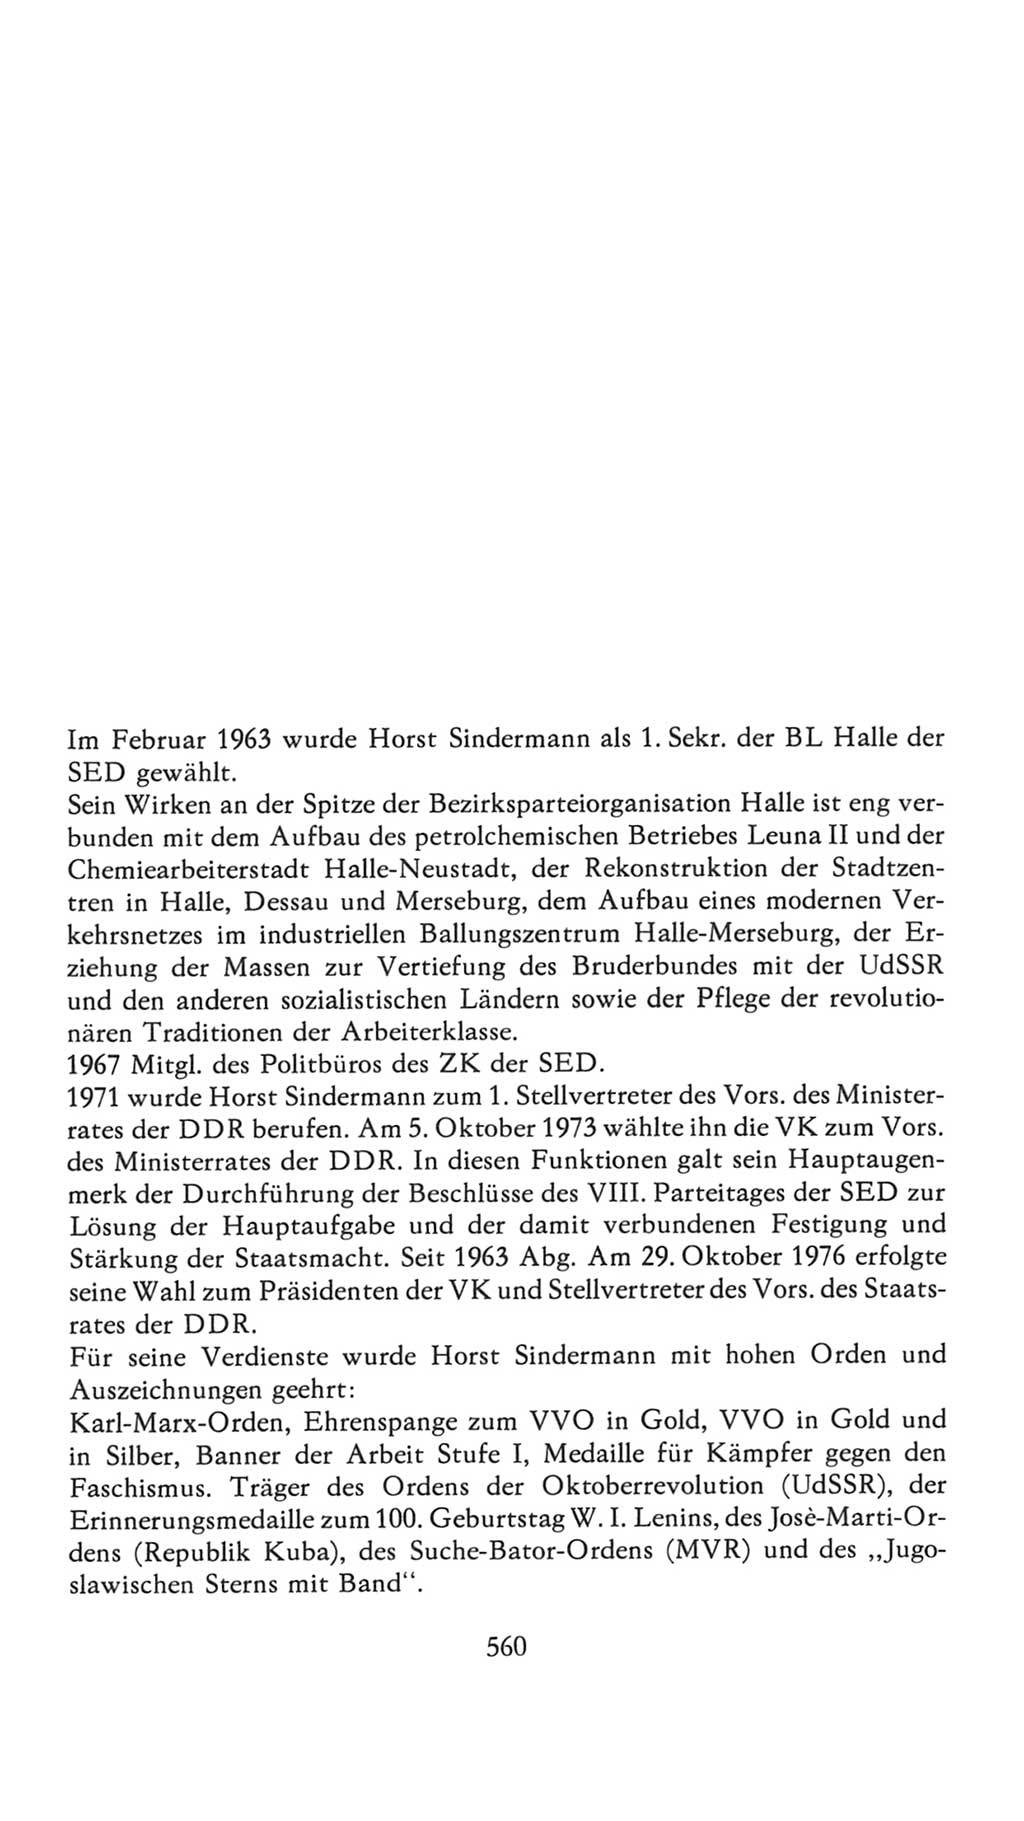 Volkskammer (VK) der Deutschen Demokratischen Republik (DDR), 7. Wahlperiode 1976-1981, Seite 560 (VK. DDR 7. WP. 1976-1981, S. 560)